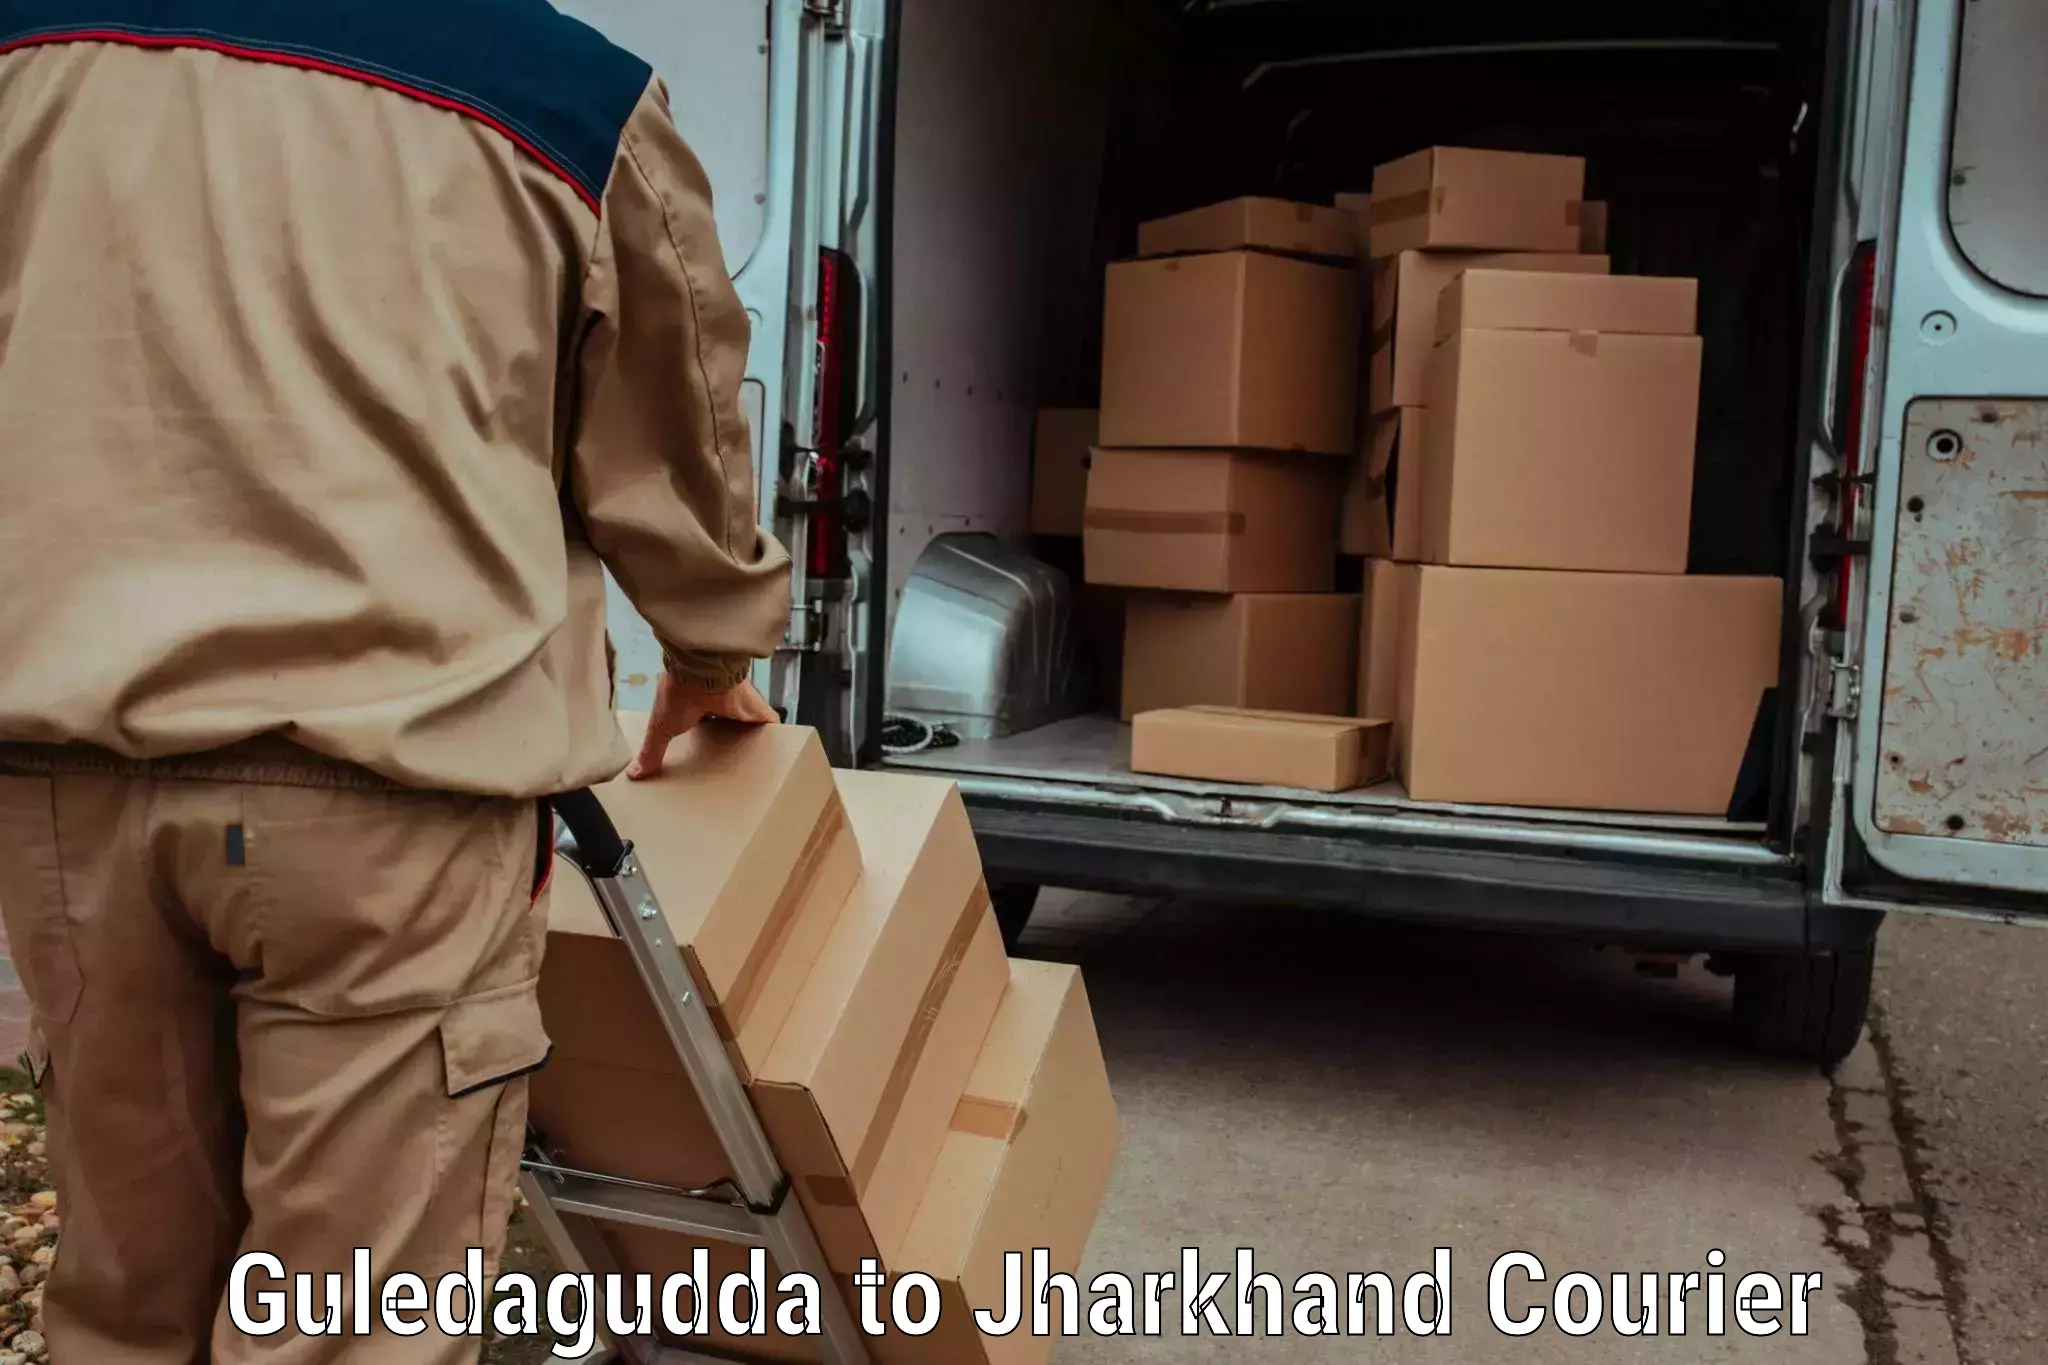 Regular parcel service Guledagudda to Domchanch